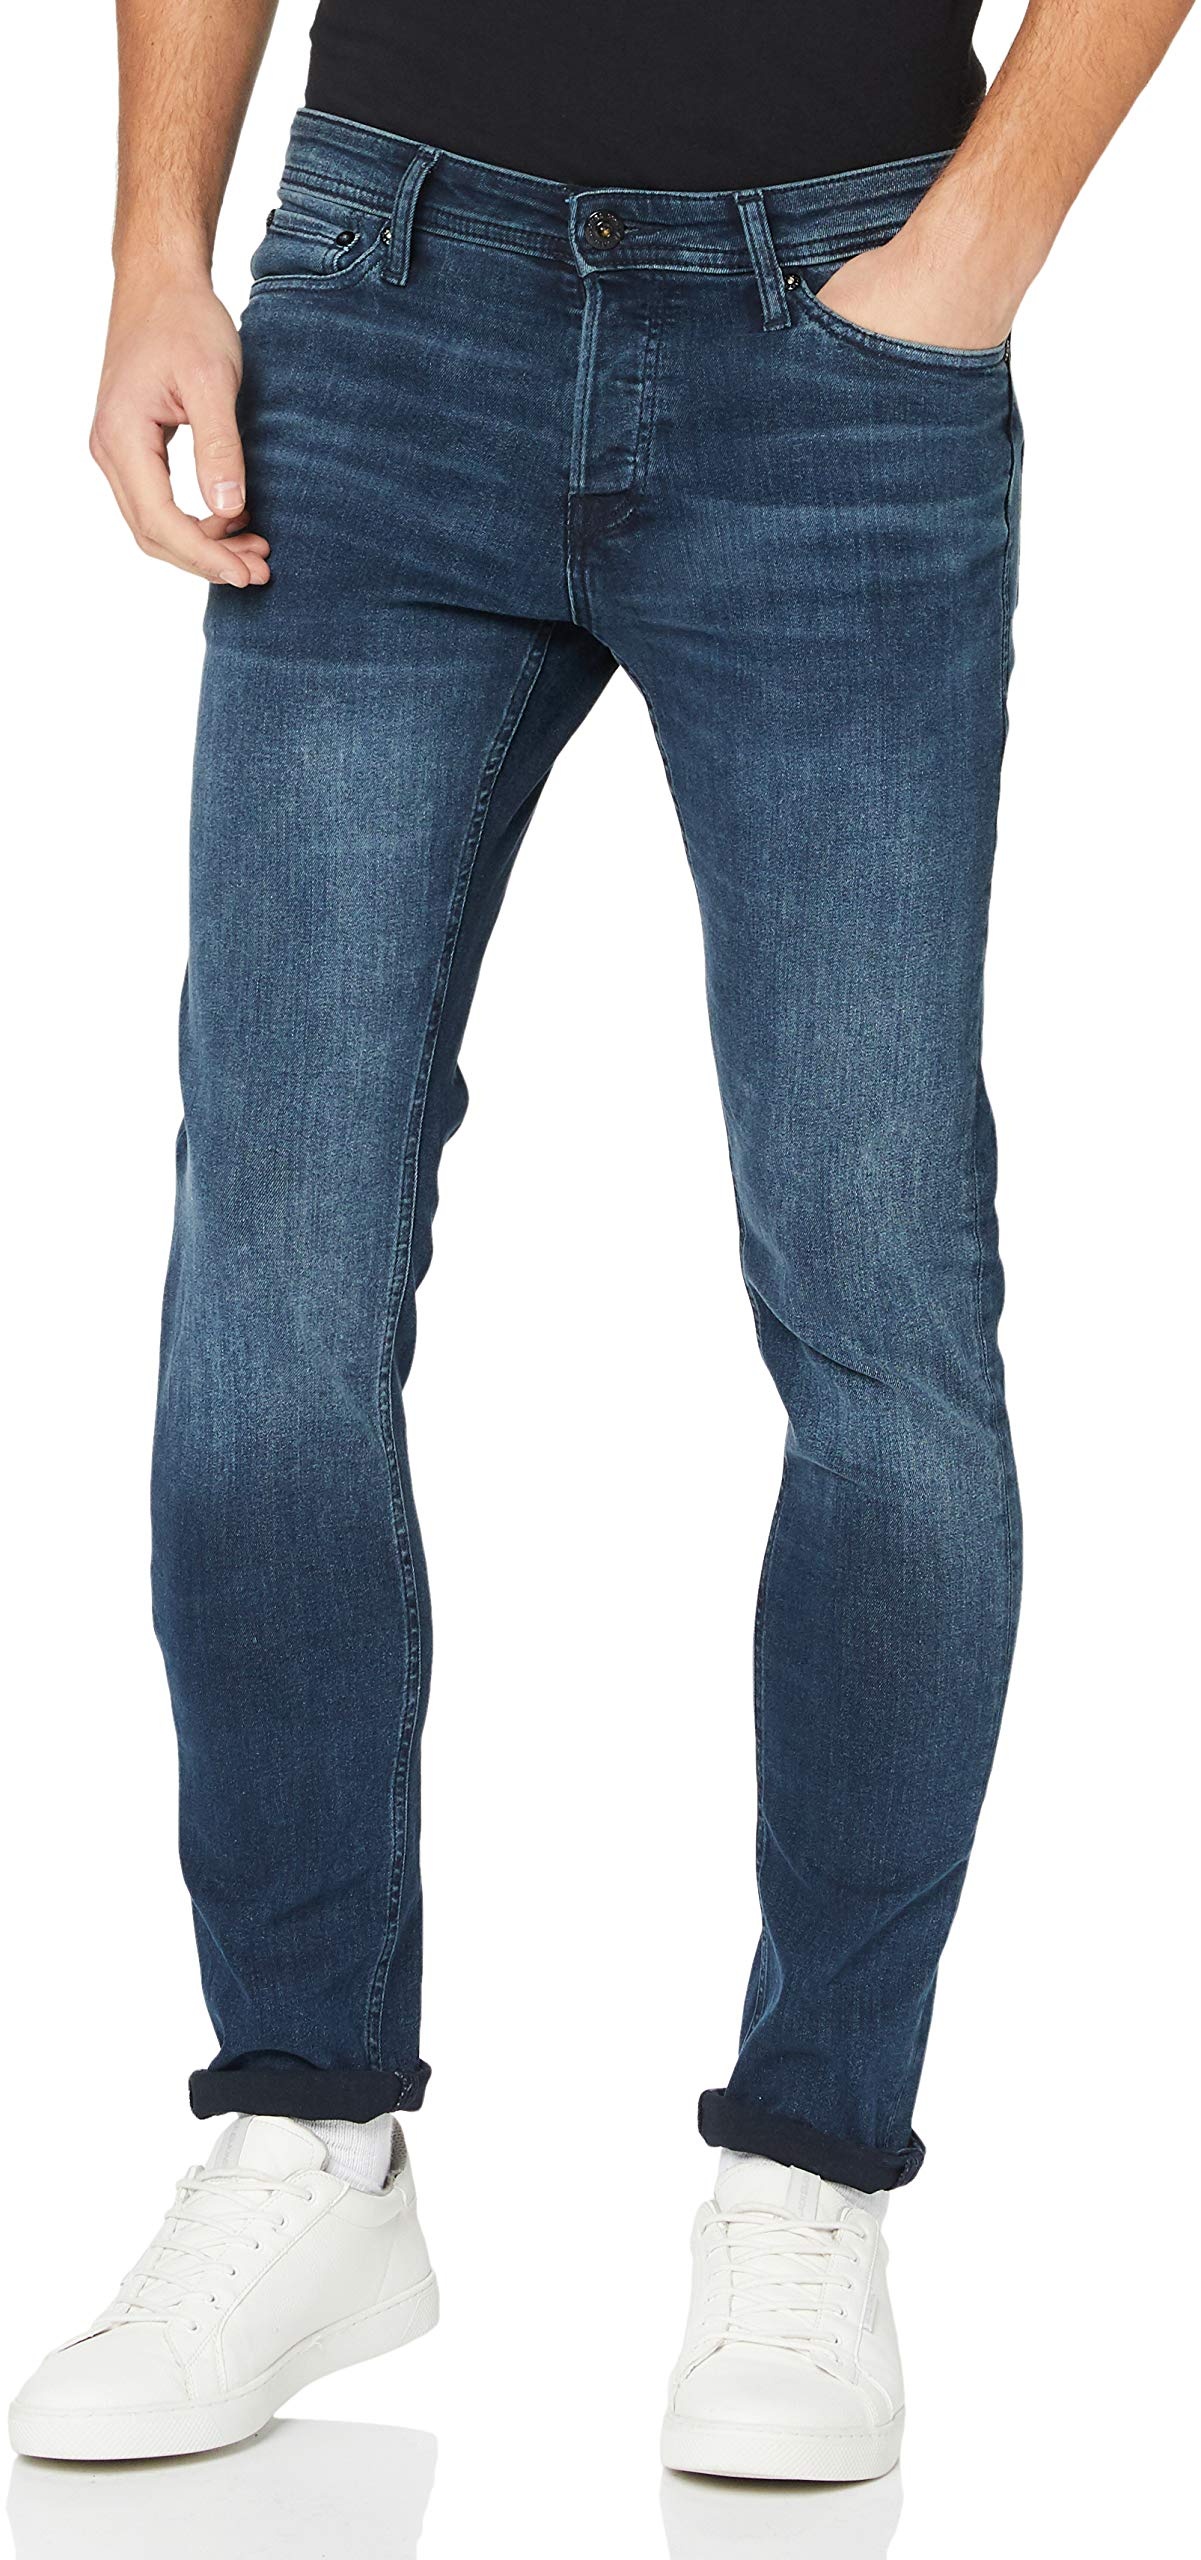 Herren Jack & Jones Slim Fit Jeans Glenn Skinny Tapered JJI Glenn ORIGINAL AM, Farben:Dunkelblau, Größe Jeans:34W / 34L